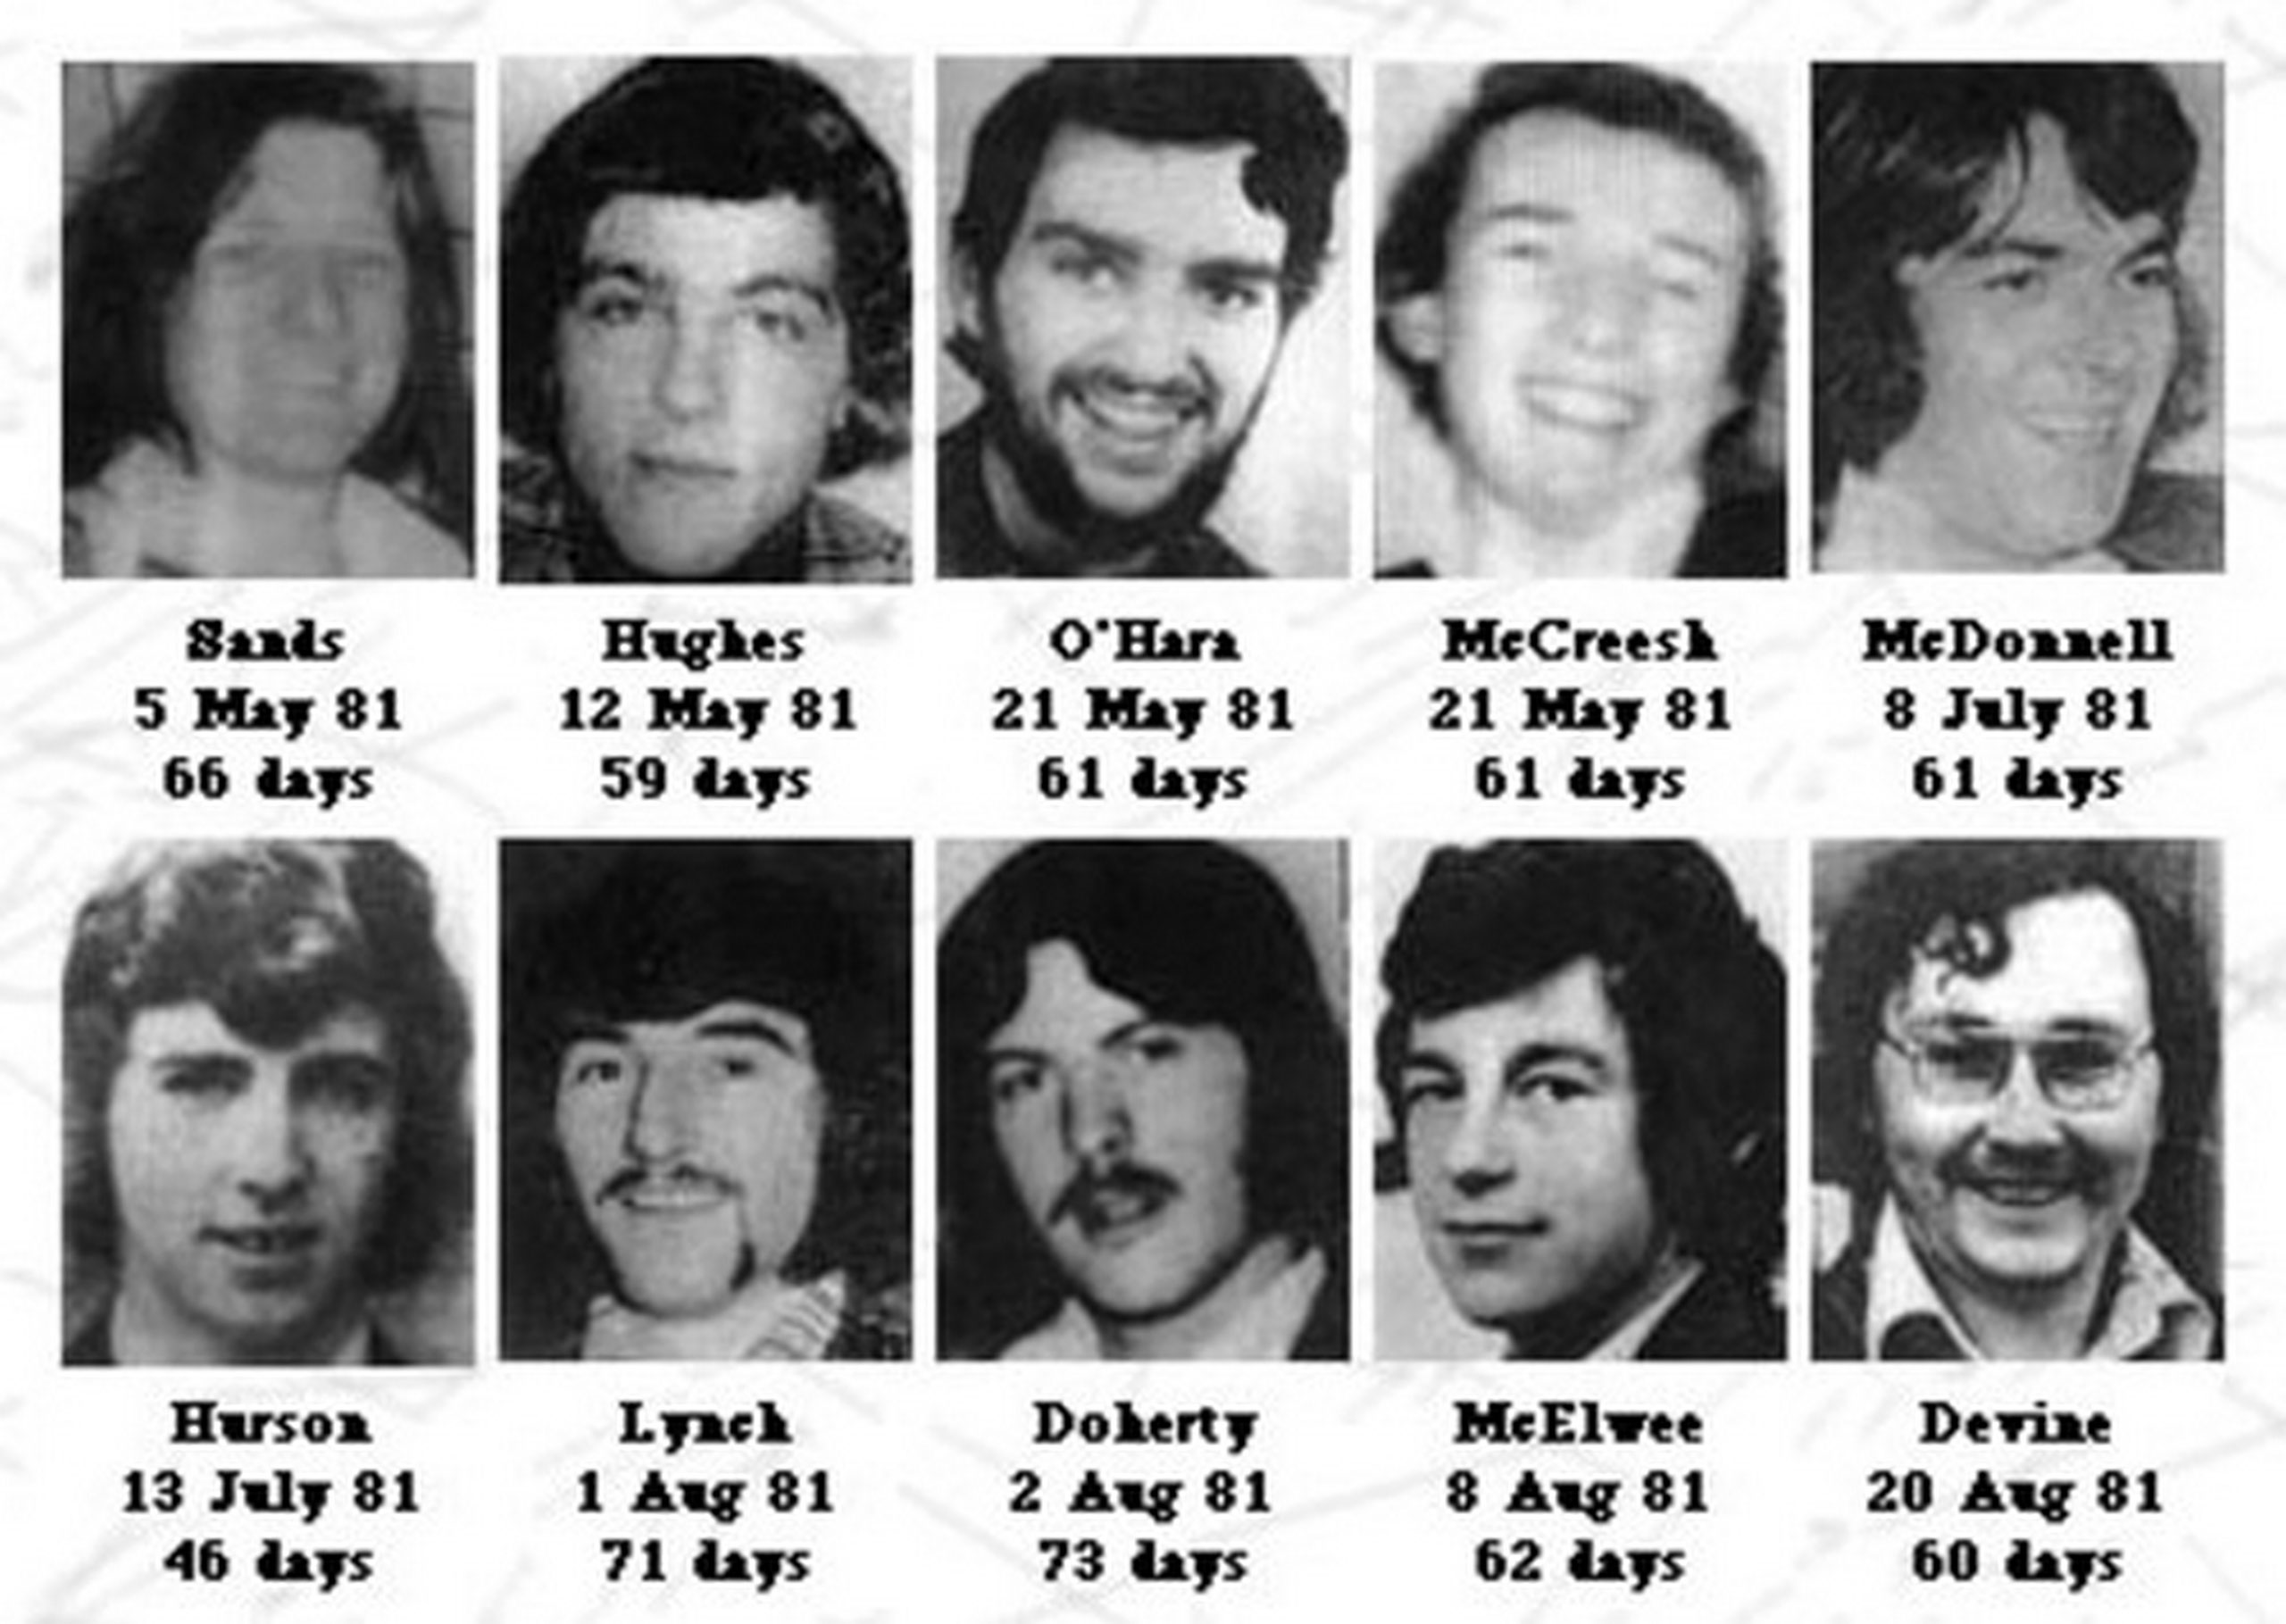 Et si la mort de Marcelle Pichon avait été sous l’influence de la grève de la faim de Bobby Sands et de ses neuf camarades de l’Ira emprisonnés comme lui à la prison irlandaise de Maze/Long Kesh ? Entamée au mois de mars 1981 pour obtenir des autorités britanniques le statut de prisonnier politique, Bobby Sands et ses camarades mourront les uns après les autres, certains au bout de 46 jours, d’autres de 73 jours (66 jours pour Bobby Sands : il était à la fin devenu aveugle…). À l’époque, l’intransigeance de Margareth Thatcher choqua, comme peut choquer l’intransigeance de Marcelle Pichon envers elle-même. À noter : Bobby Sands écrivit un journal de son agonie, mais seulement pendant les dix-sept premiers jours de sa grève de la faim (voir www.bobbysandstrust.com/writings/prison-diary/). Or, le journal de Marcelle Pichon, tel qu’il nous est parvenu, démarre au 17e jour de son jeûne, pour s’interrompre au 45e jour...